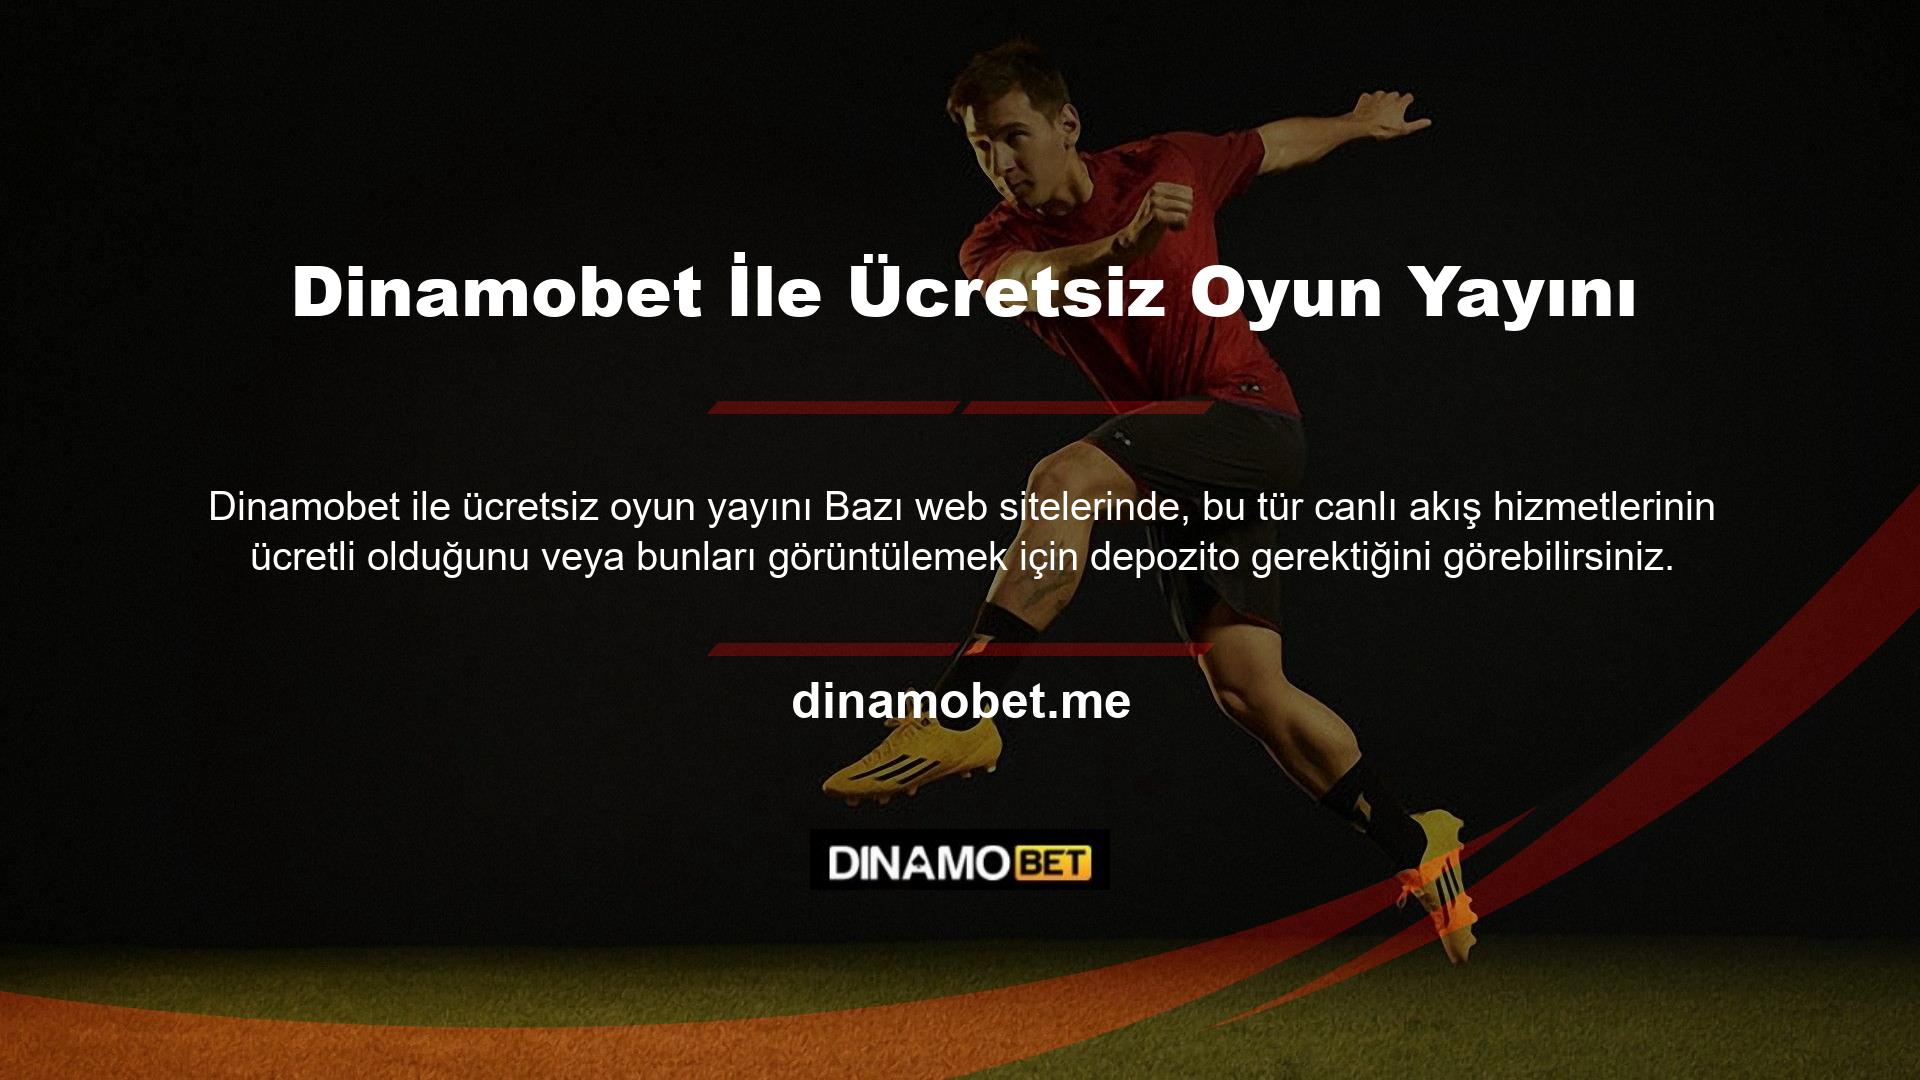 Ancak oyunun ücretsiz olarak yayınlanmasının Dinamobet tarafından sunulduğu açık